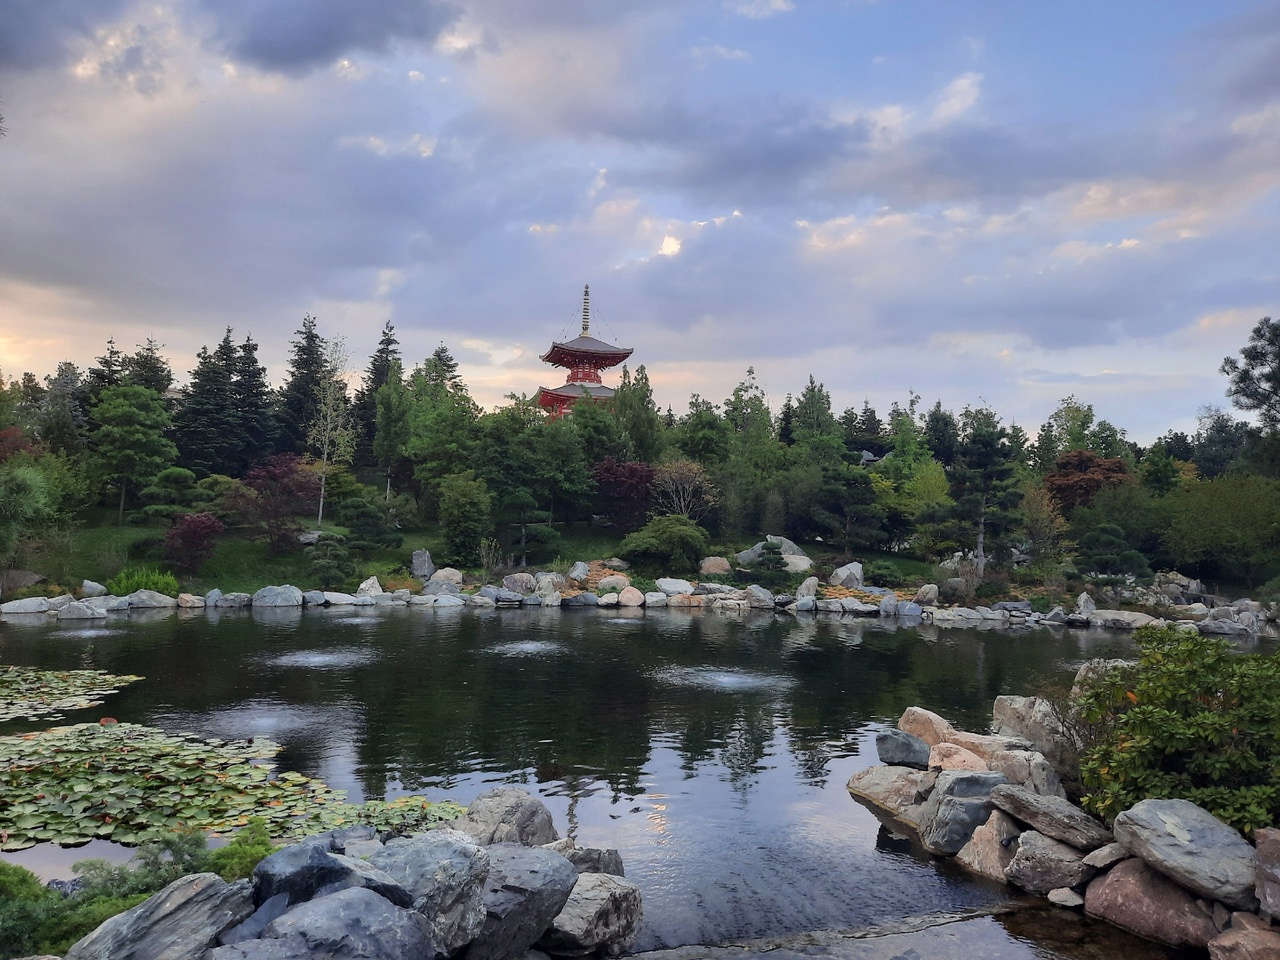 Японский Сад в парке Галицкого в Краснодаре. Стоит ли ехать туда ростовчанам?